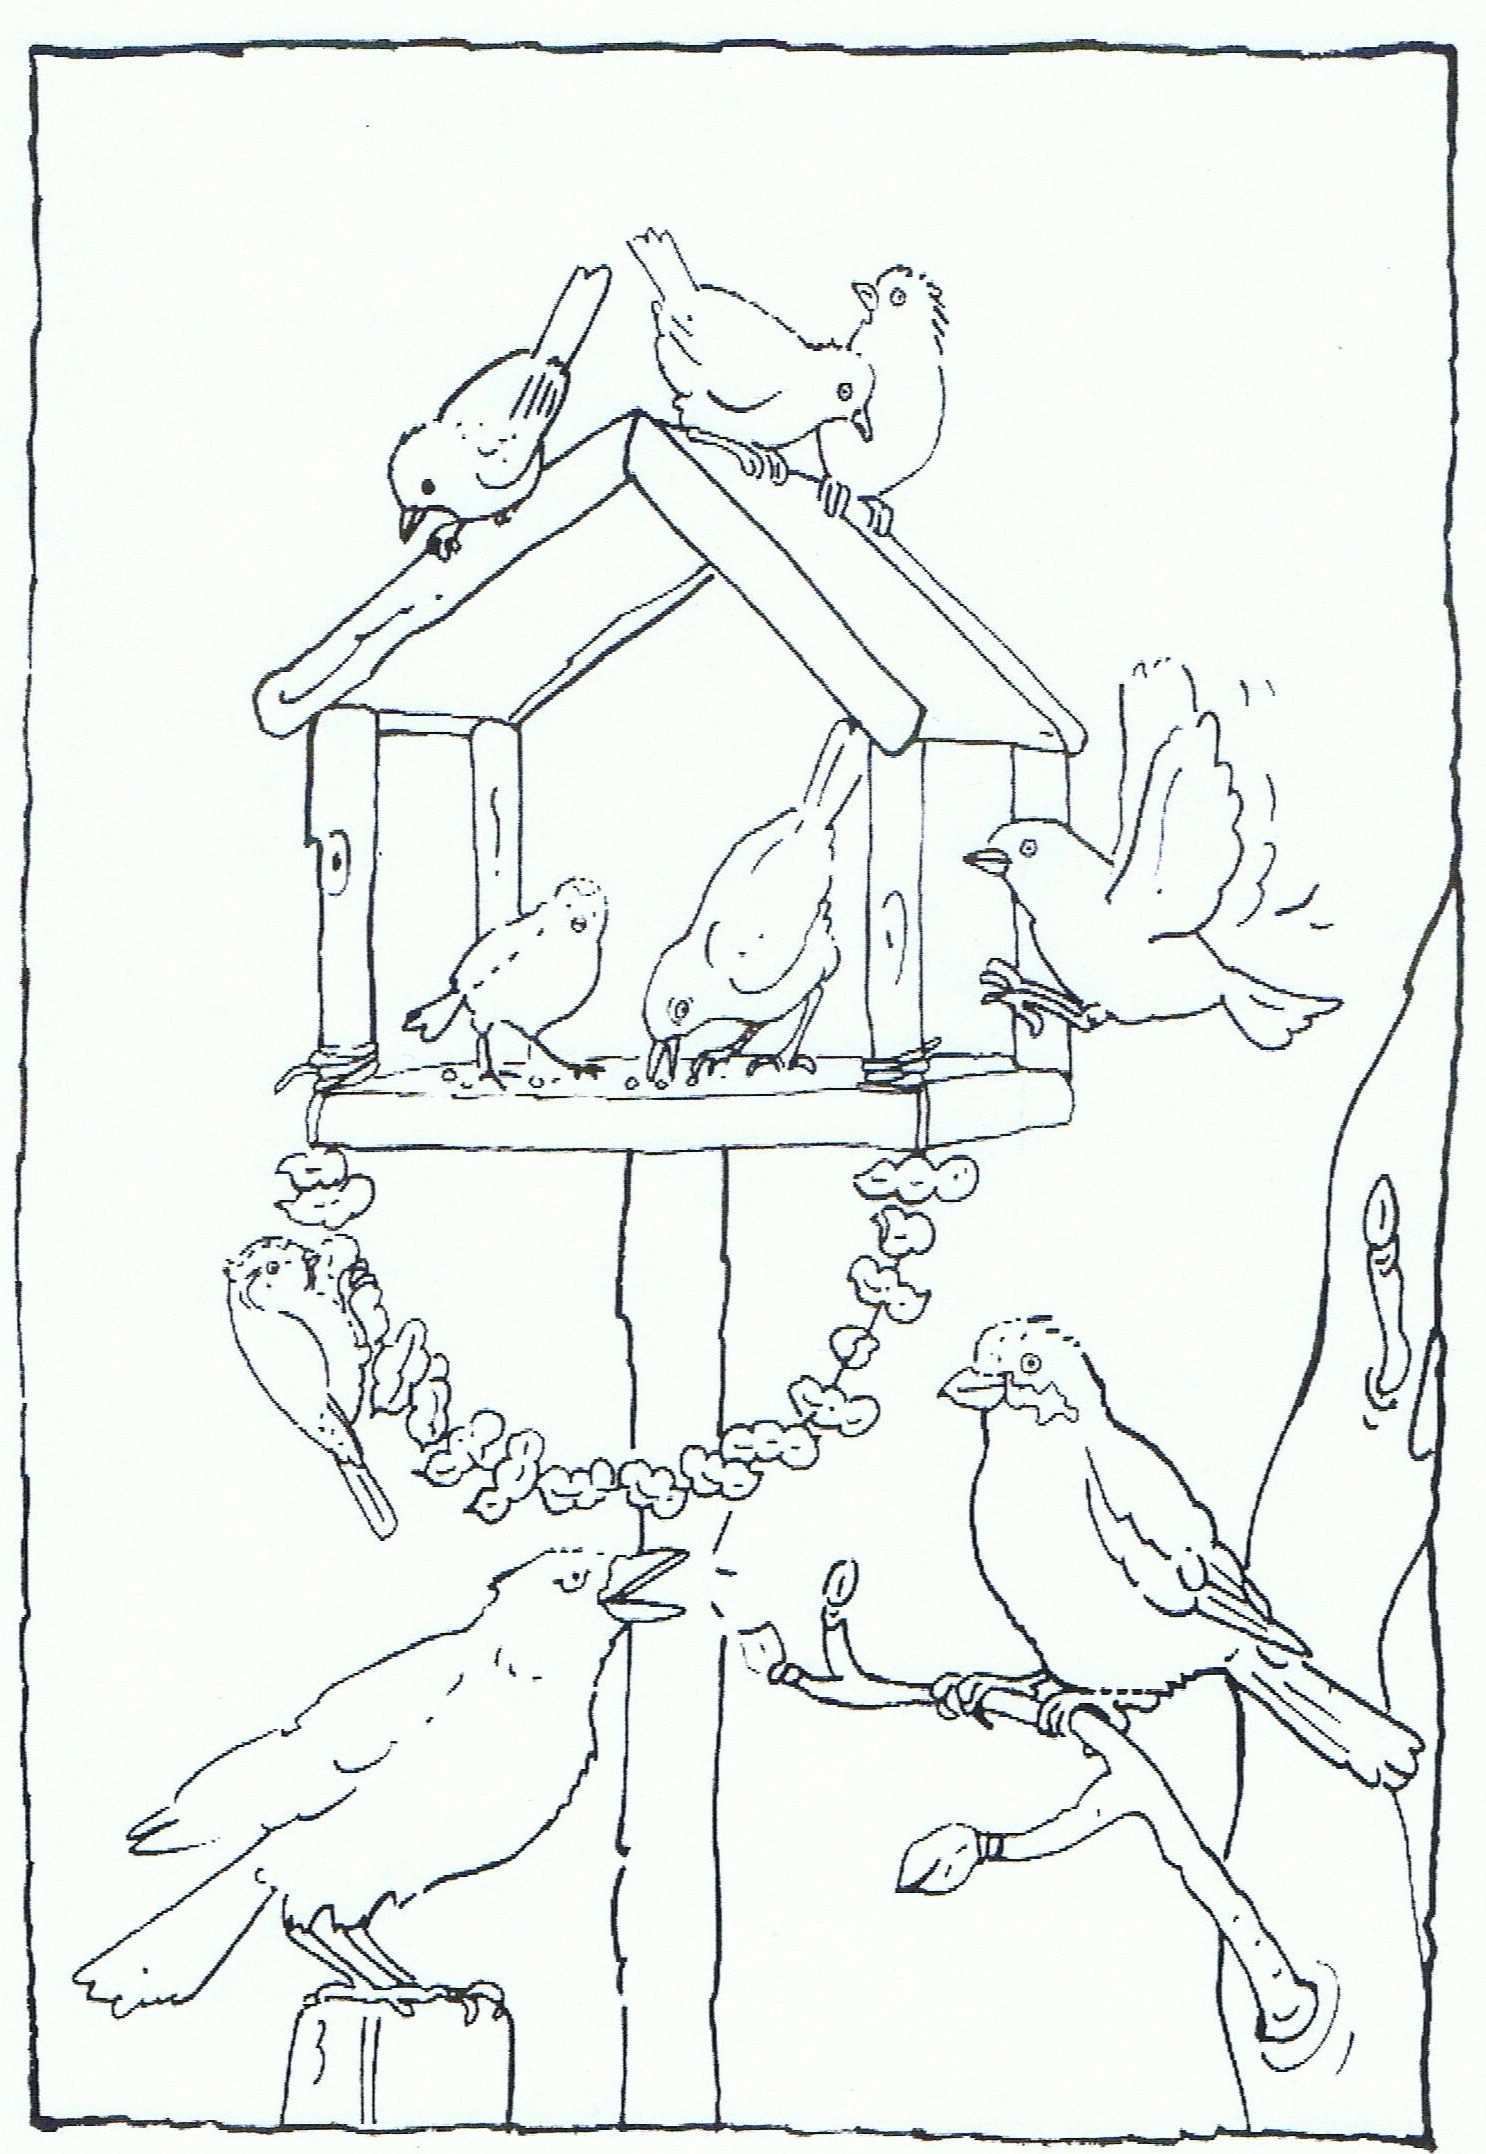 Feeding Birds In Your Garden Coloring Page Vogels Voeren In Je Tuin Kleurplaat Kleurp